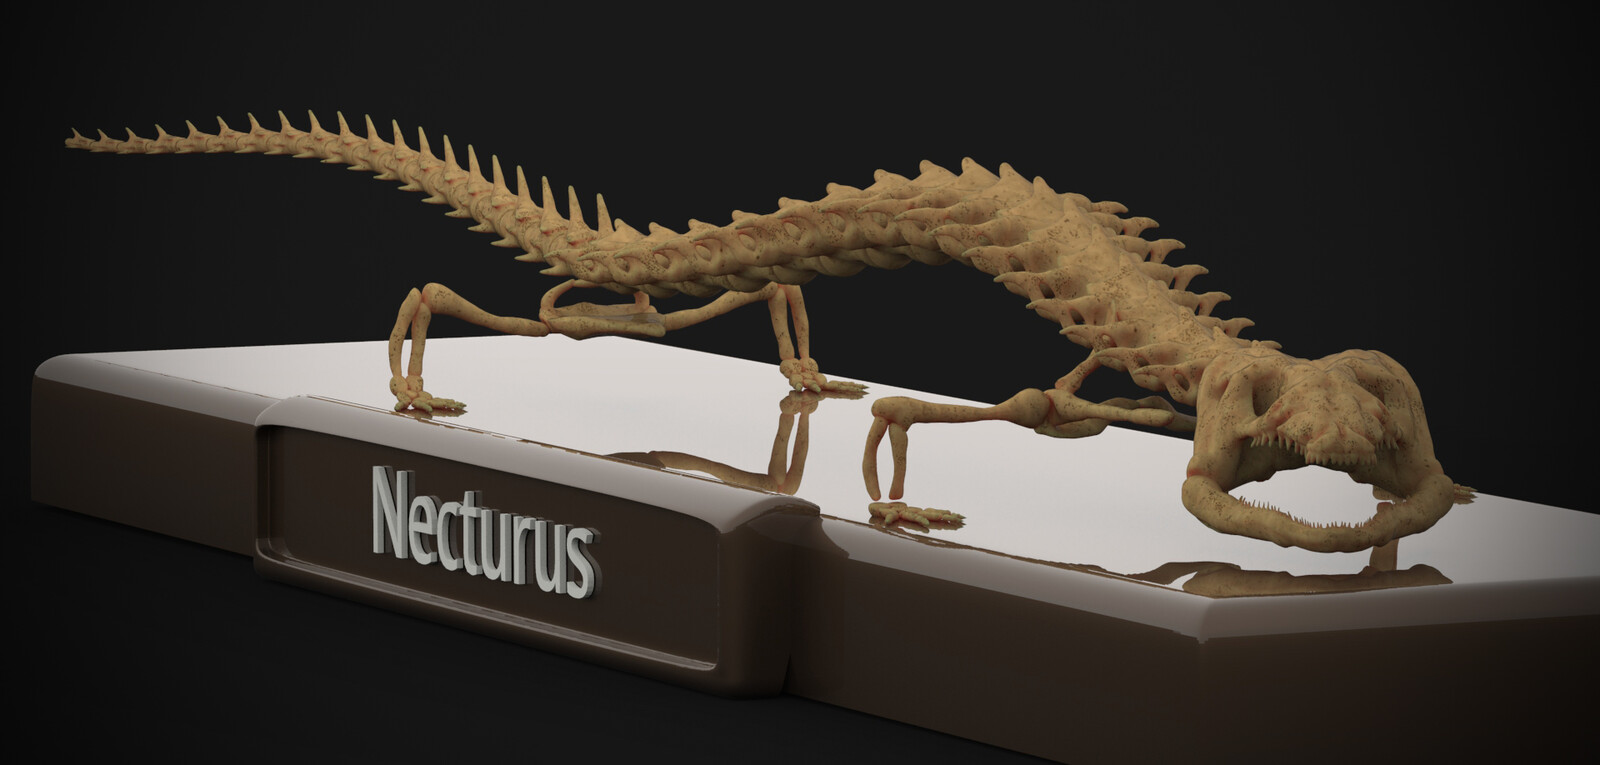 Necturus